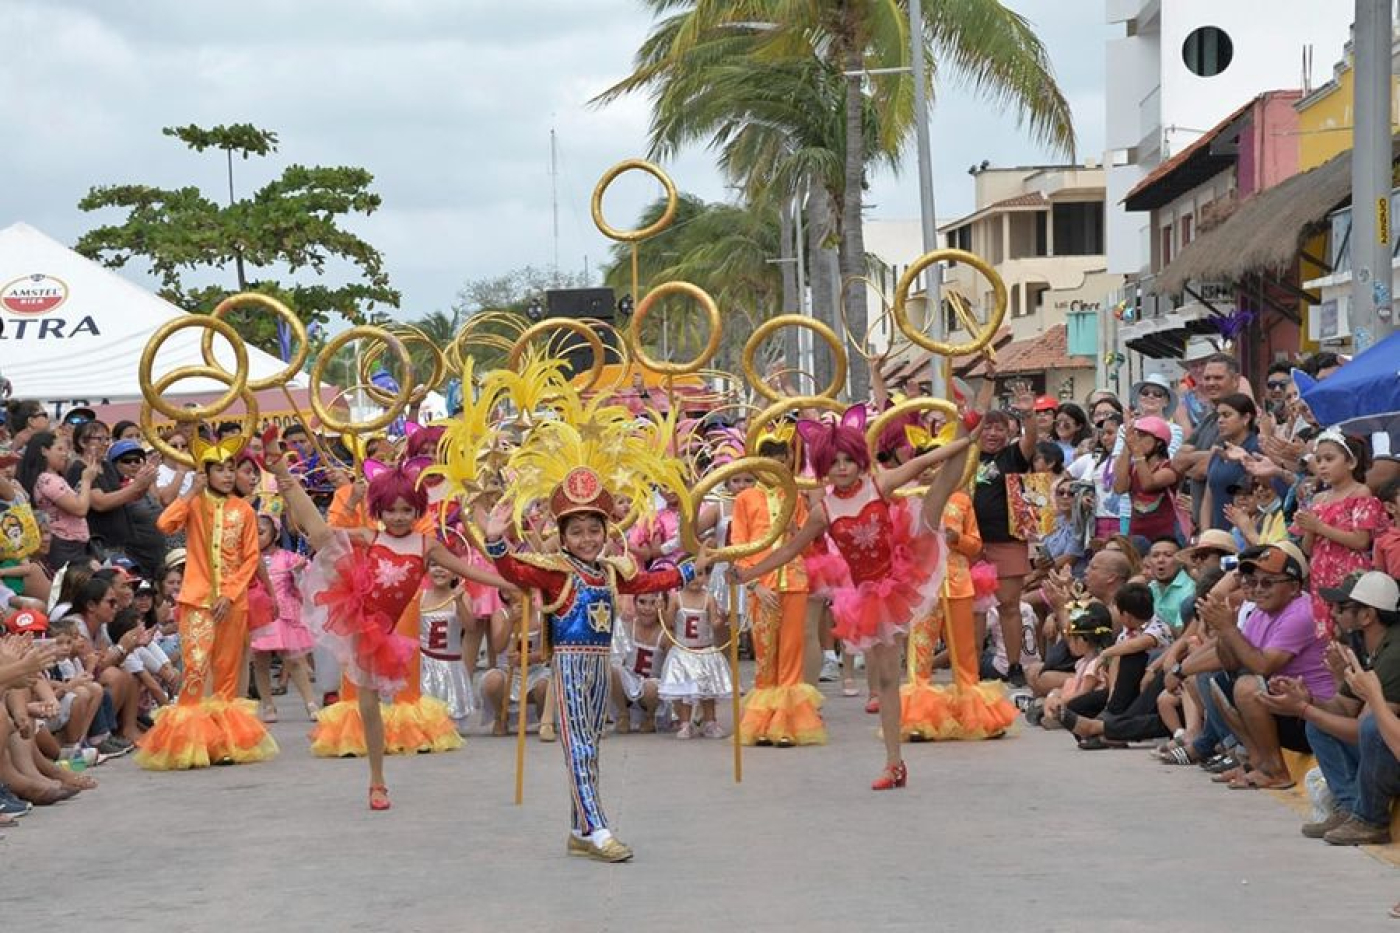 La FPMC se suma a la celebración de 150 años del Carnaval en Cozumel con el “Domingo de Comparsas”